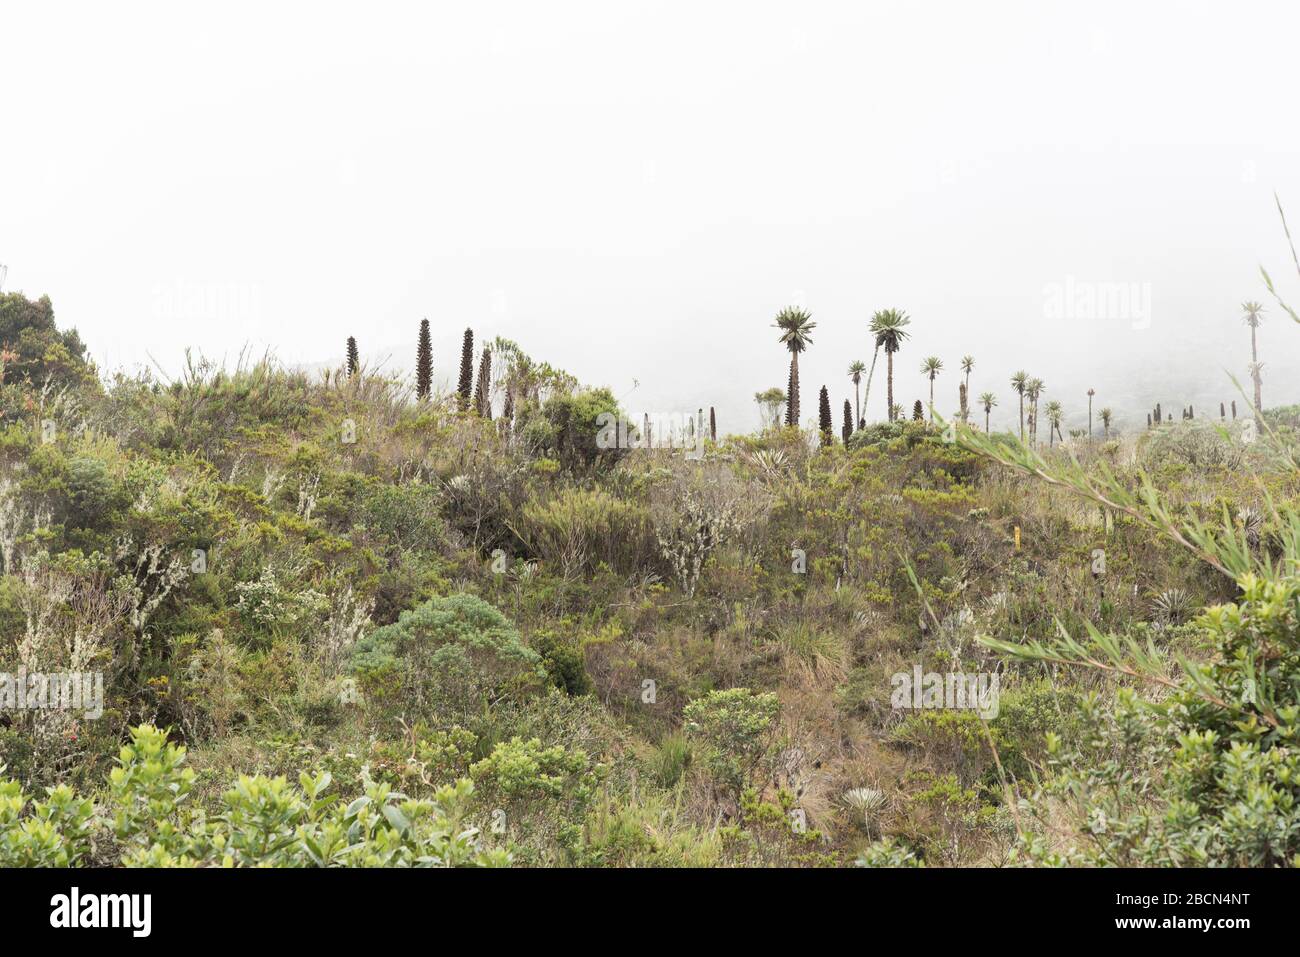 Parco naturale nazionale di Chingaza. Paesaggio di Paramo con vegetazione nativa, come puyas, puya goudotiana, e fragilejones, espeletia uribei. Colombia. Foto Stock